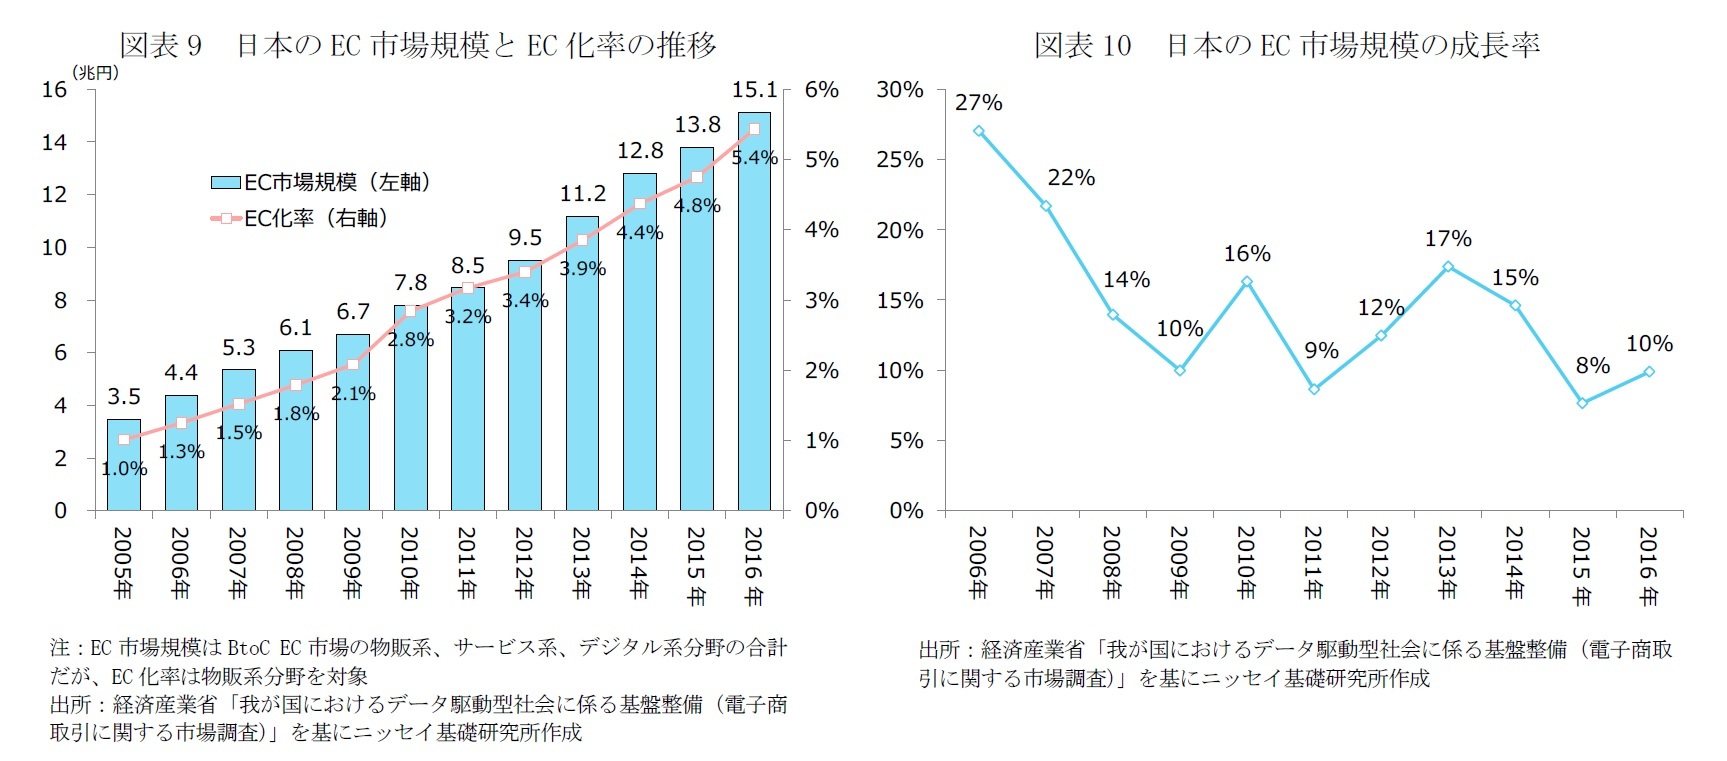 図表9　日本のEC市場規模とEC化率の推移/図表10　日本のEC市場規模の成長率